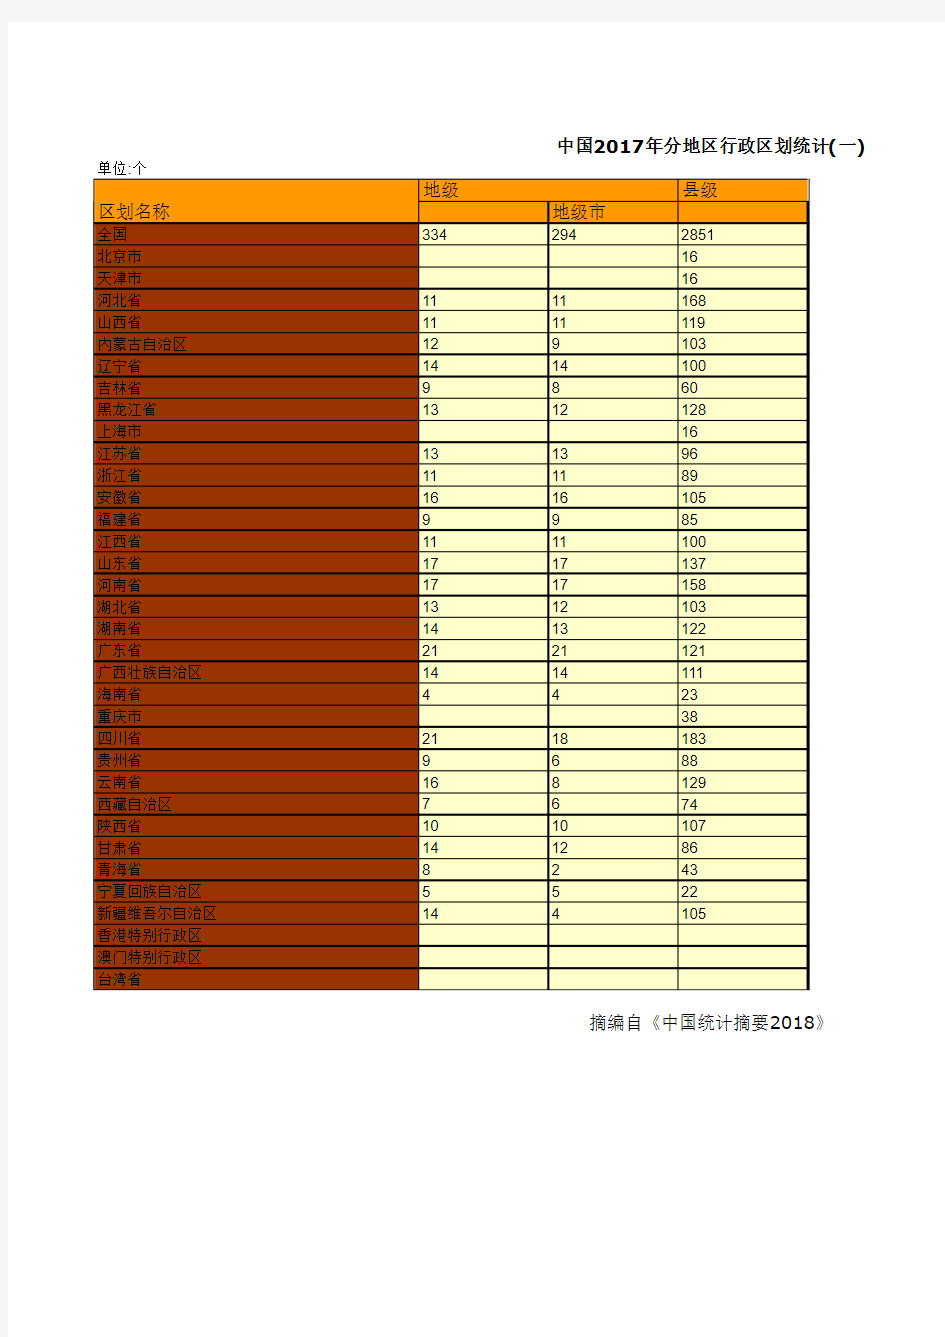 中国2017年分地区行政区划统计(一)